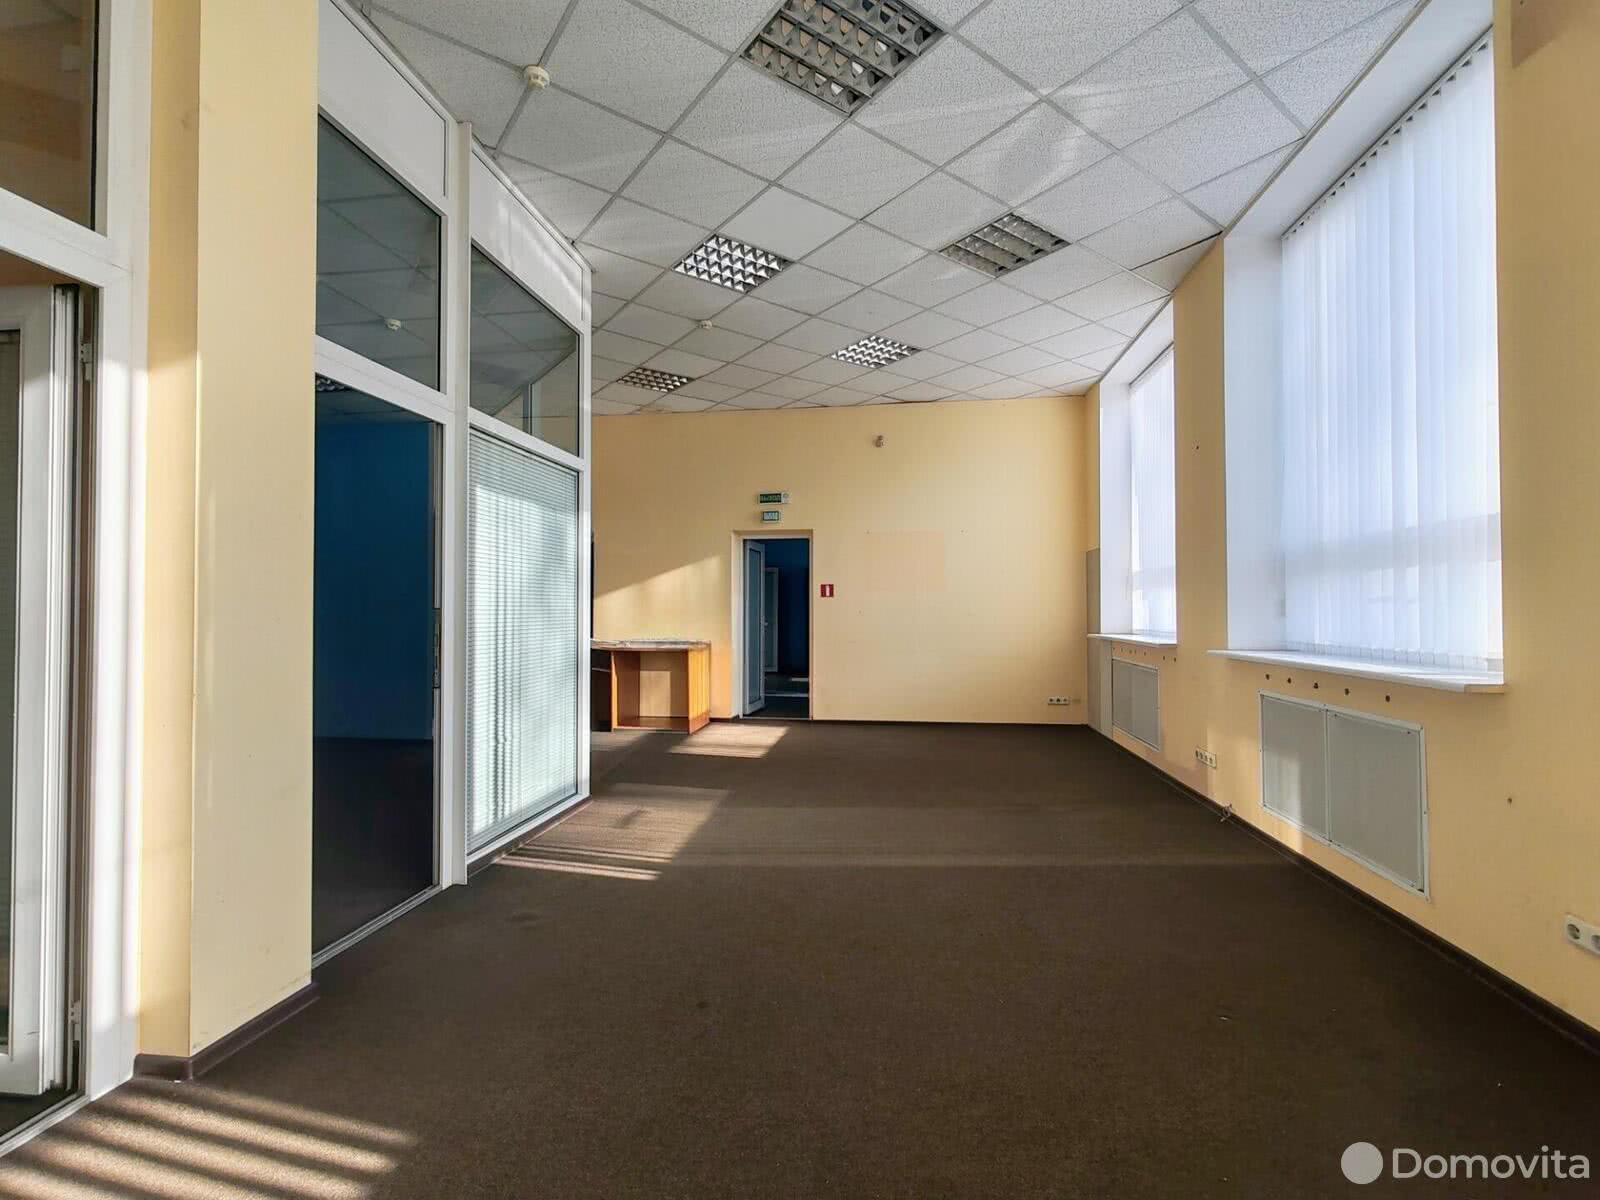 Снять офис на ул. Свердлова, д. 23 в Минске, 4480BYN, код 12077 - фото 3